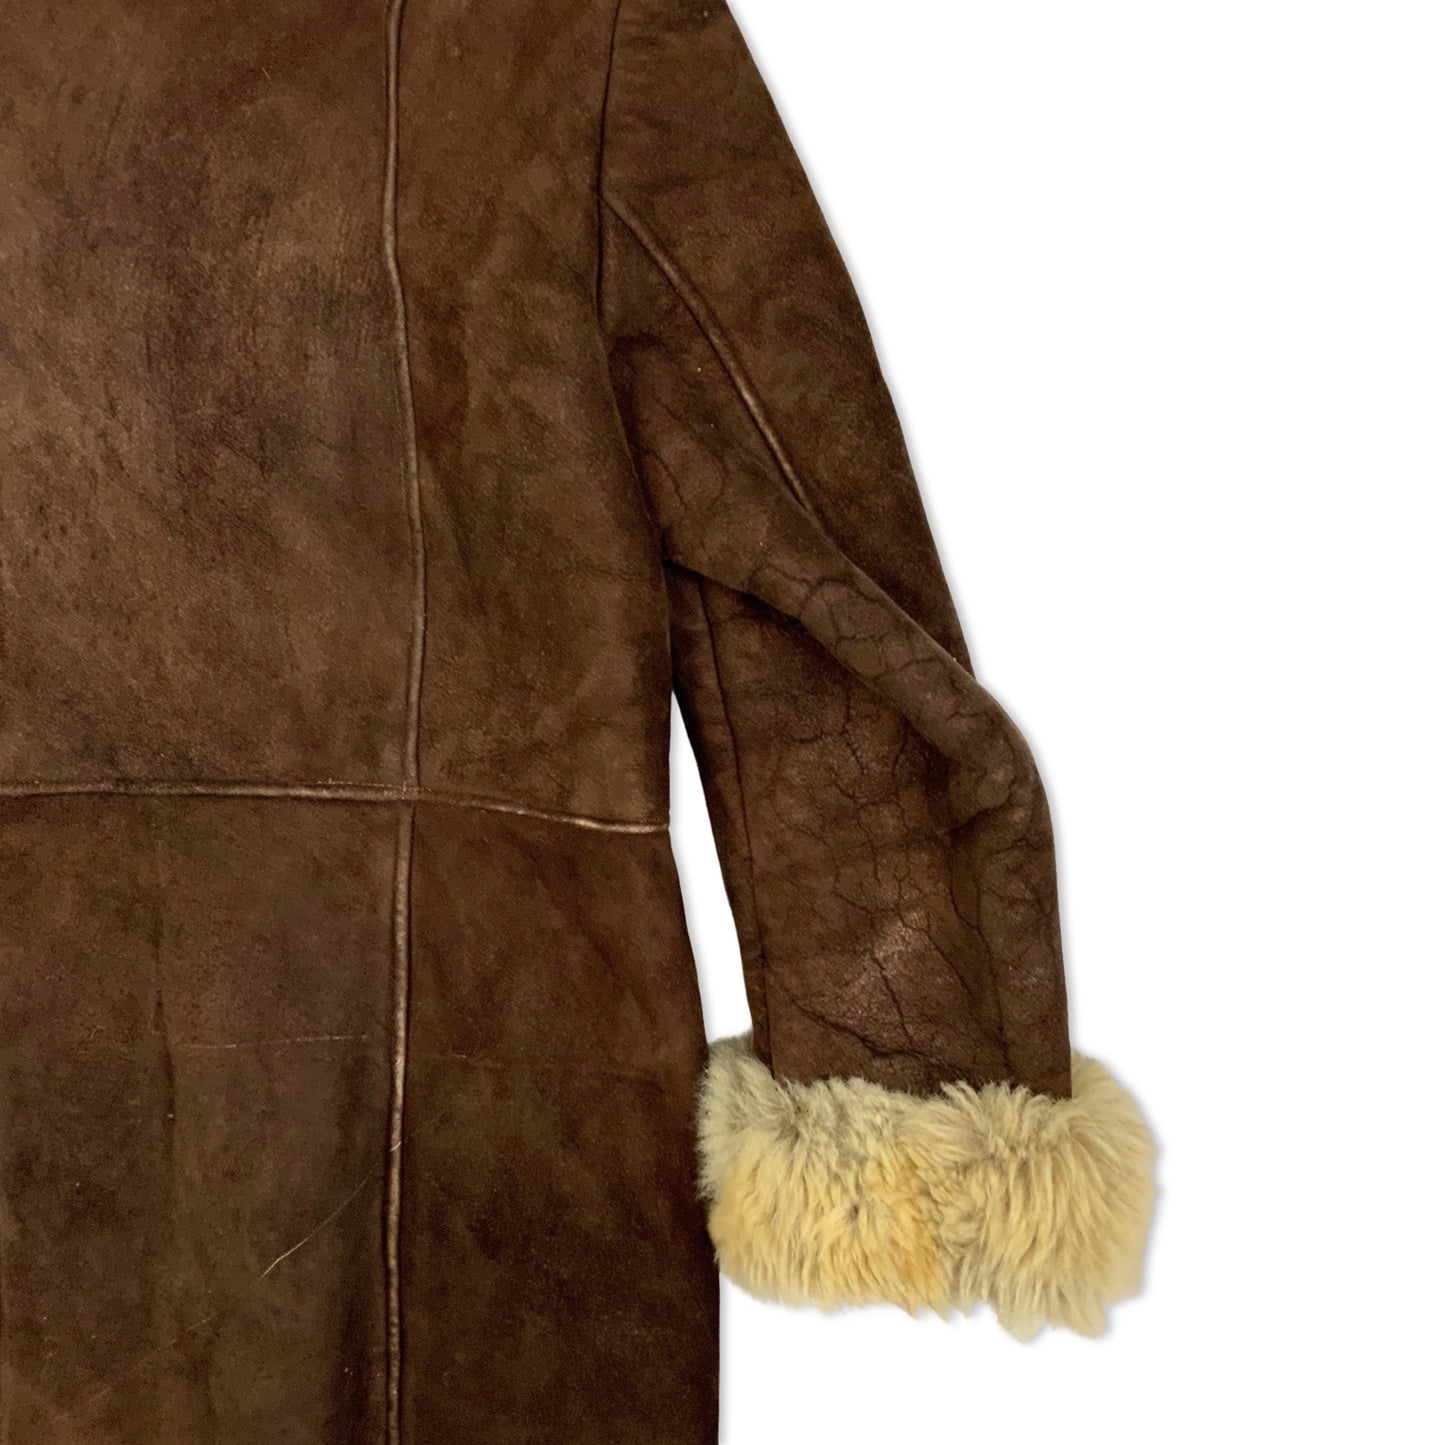 Vintage 70s Dark Brown Suede Shearling Coat 10 12